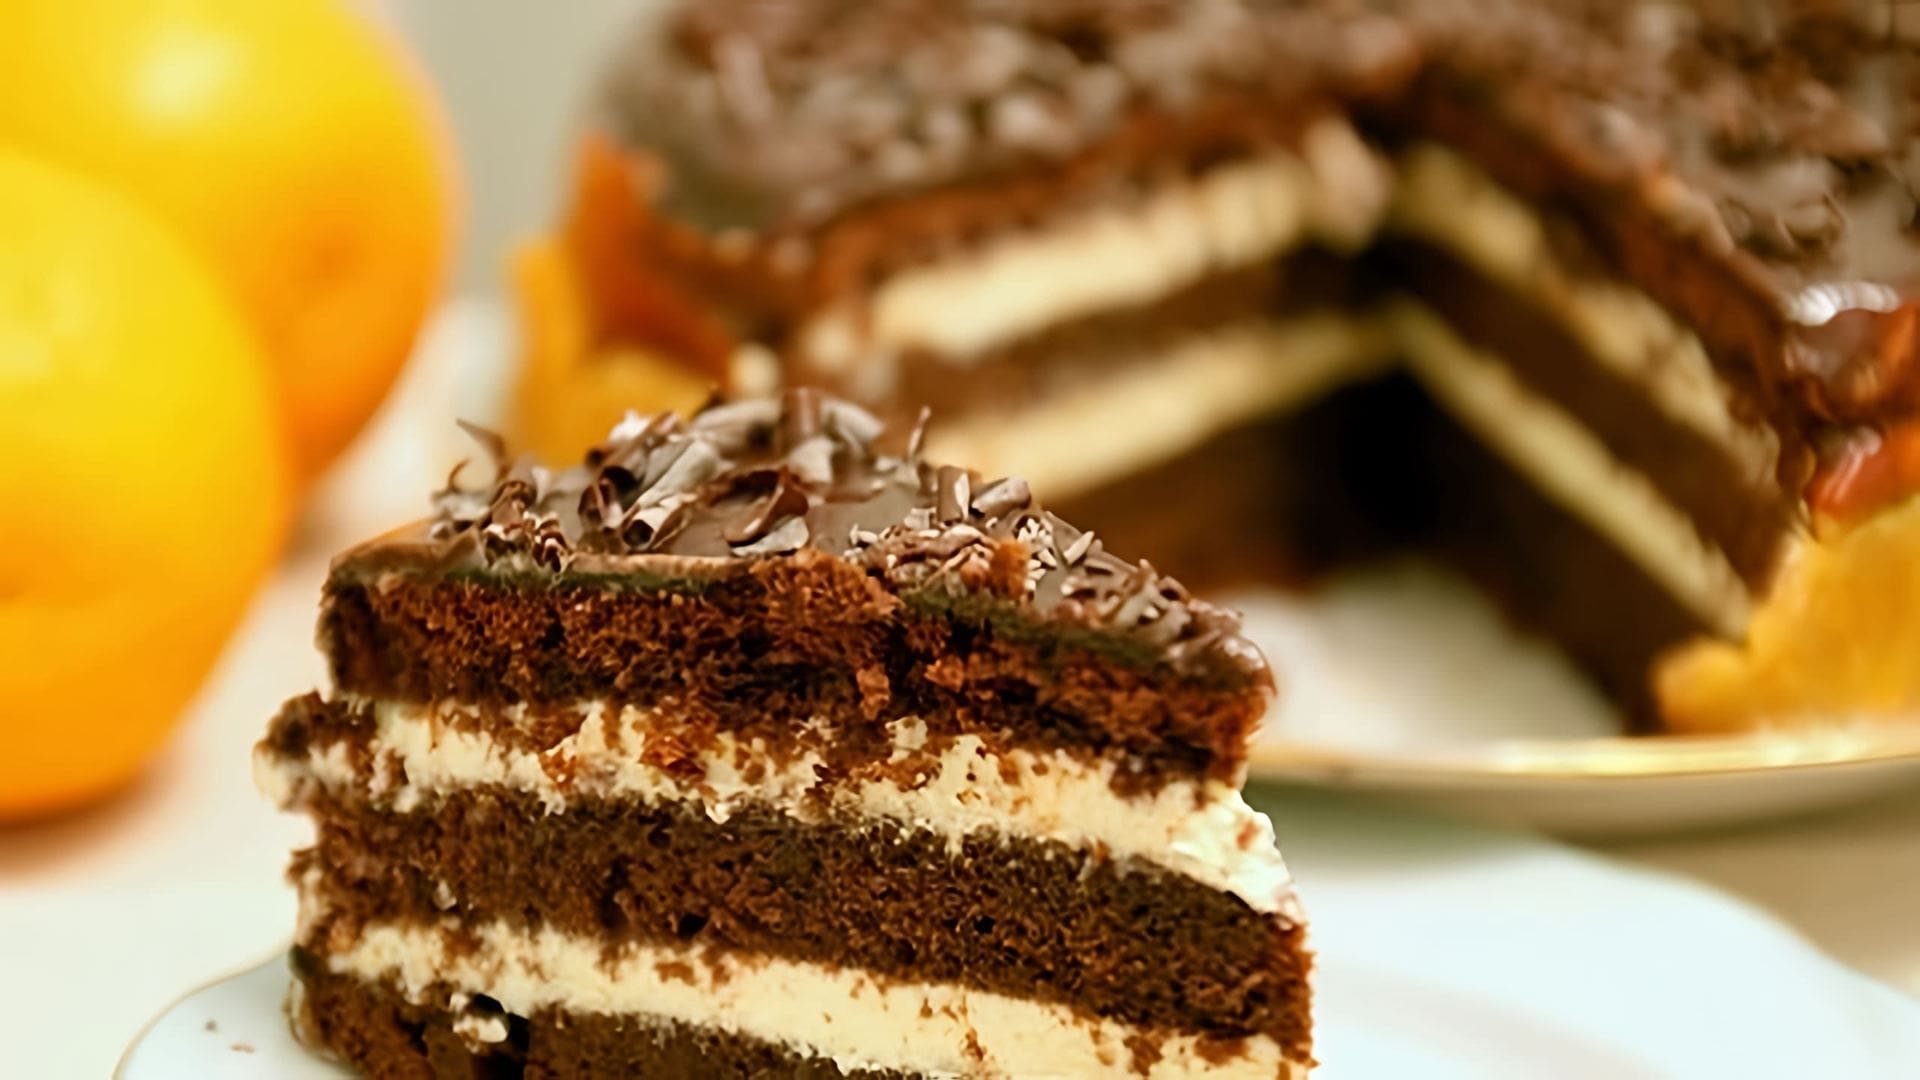 В этом видео демонстрируется рецепт приготовления Американского пирога, который называется "Crazy Cake"